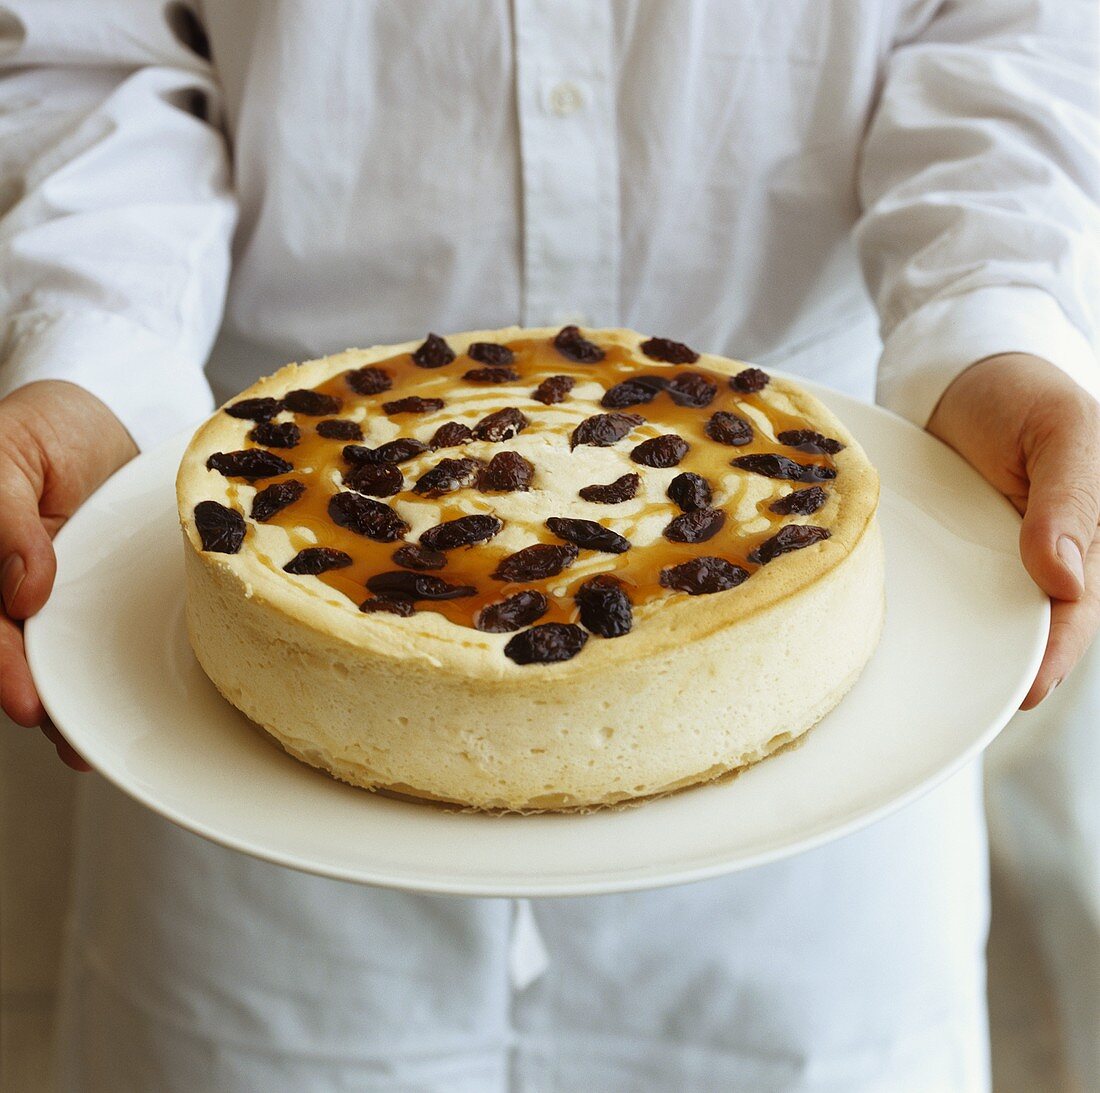 Sultana cheesecake